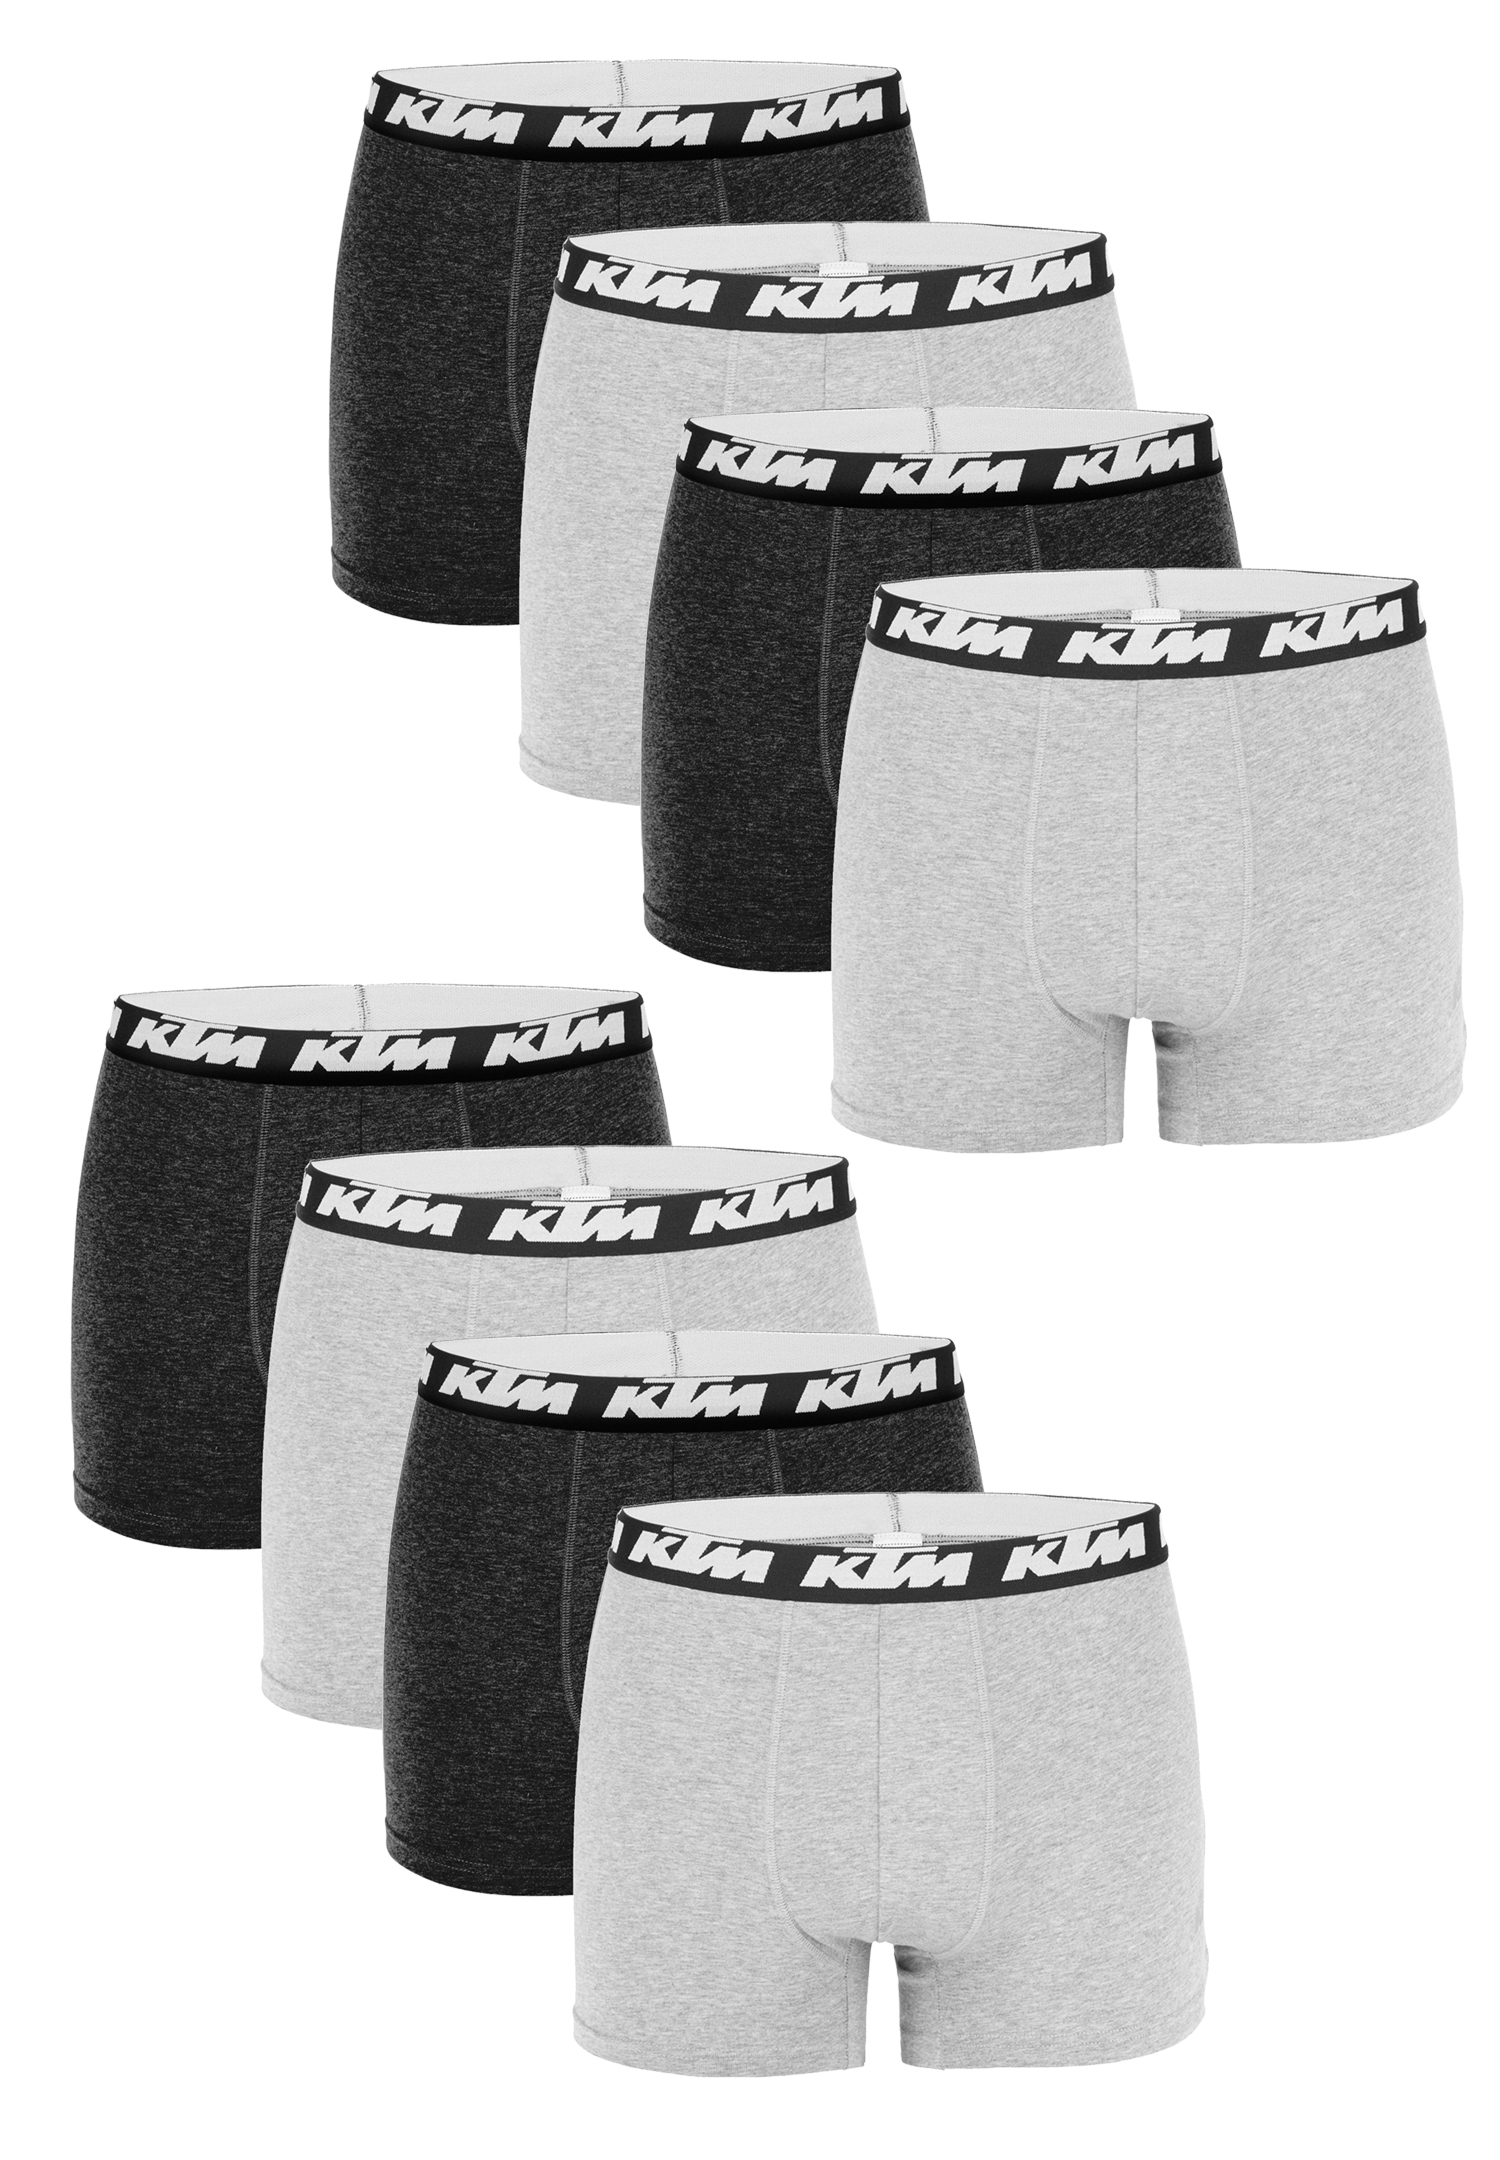 KTM Boxer Men Herren Boxershorts Pant Unterwäsche 10 er Pack, Farbe:Dark Grey / Light Grey, Bekleidungsgröße:XXL